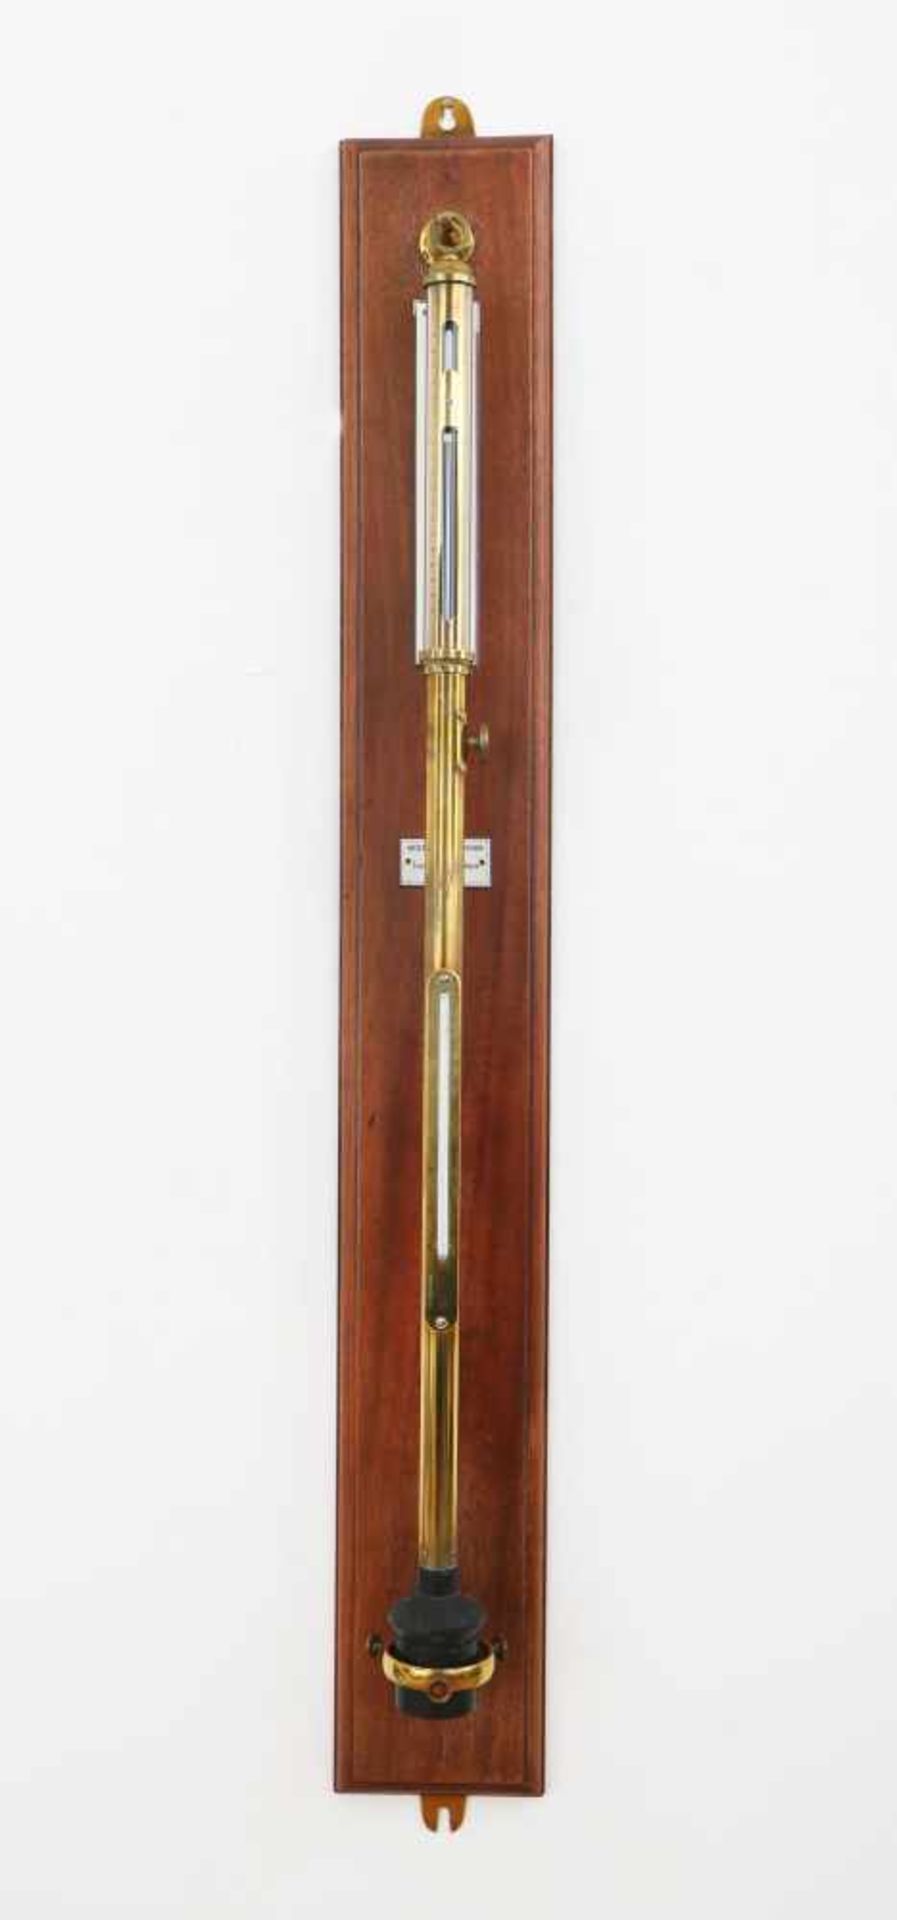 Stab-BarometerHersteller Negretti & Zambra, London, um 1855, Seriennummer 3067, großes